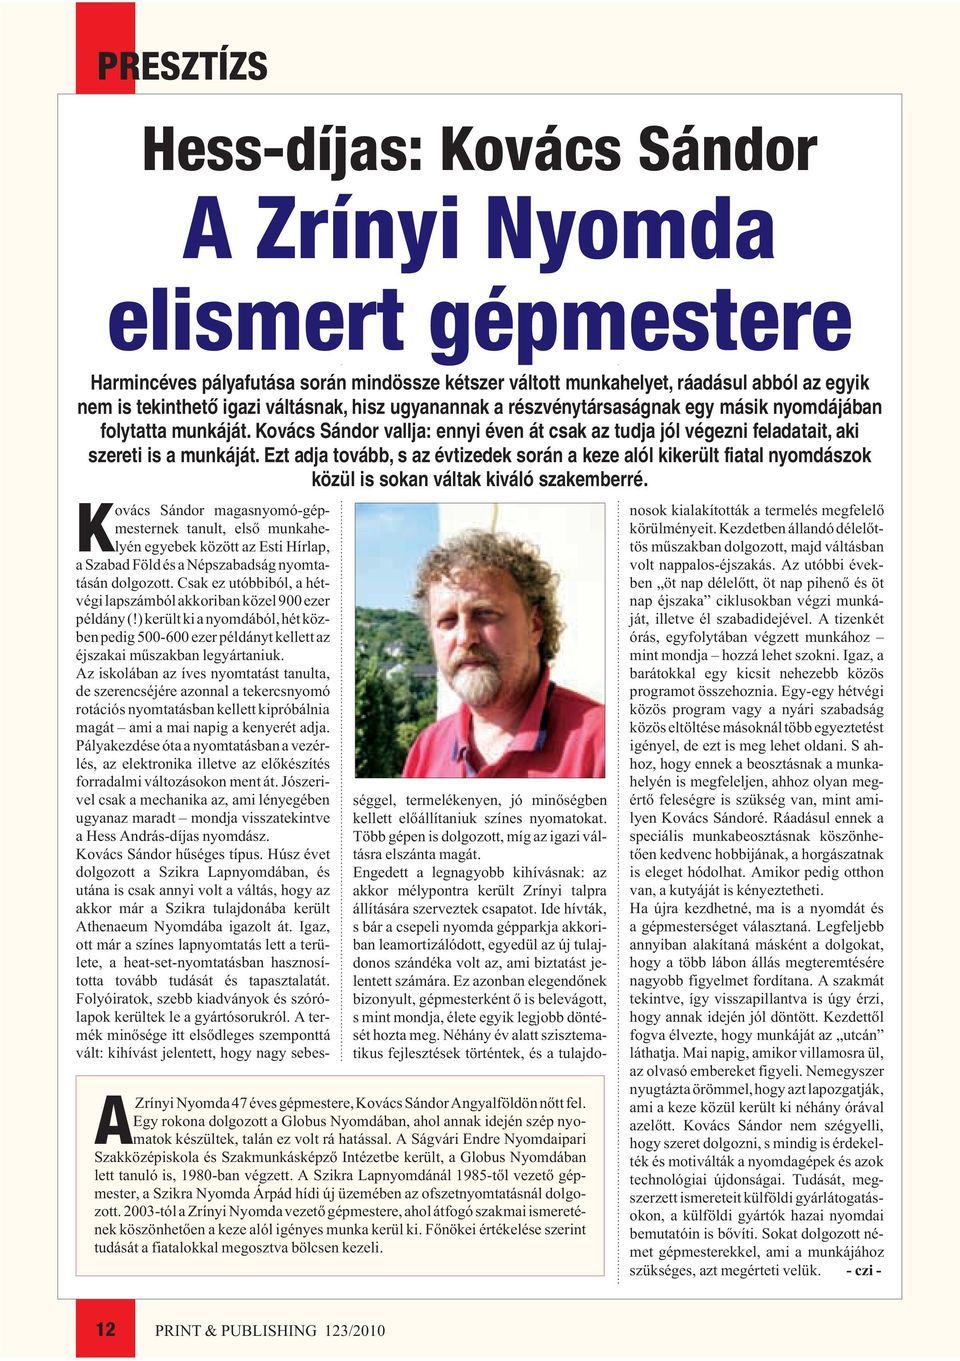 A Ságvári Endre Nyomdaipari Szakközépiskola és Szakmunkásképzõ Intézetbe került, a Globus Nyomdában lett tanuló is, 1980-ban végzett.